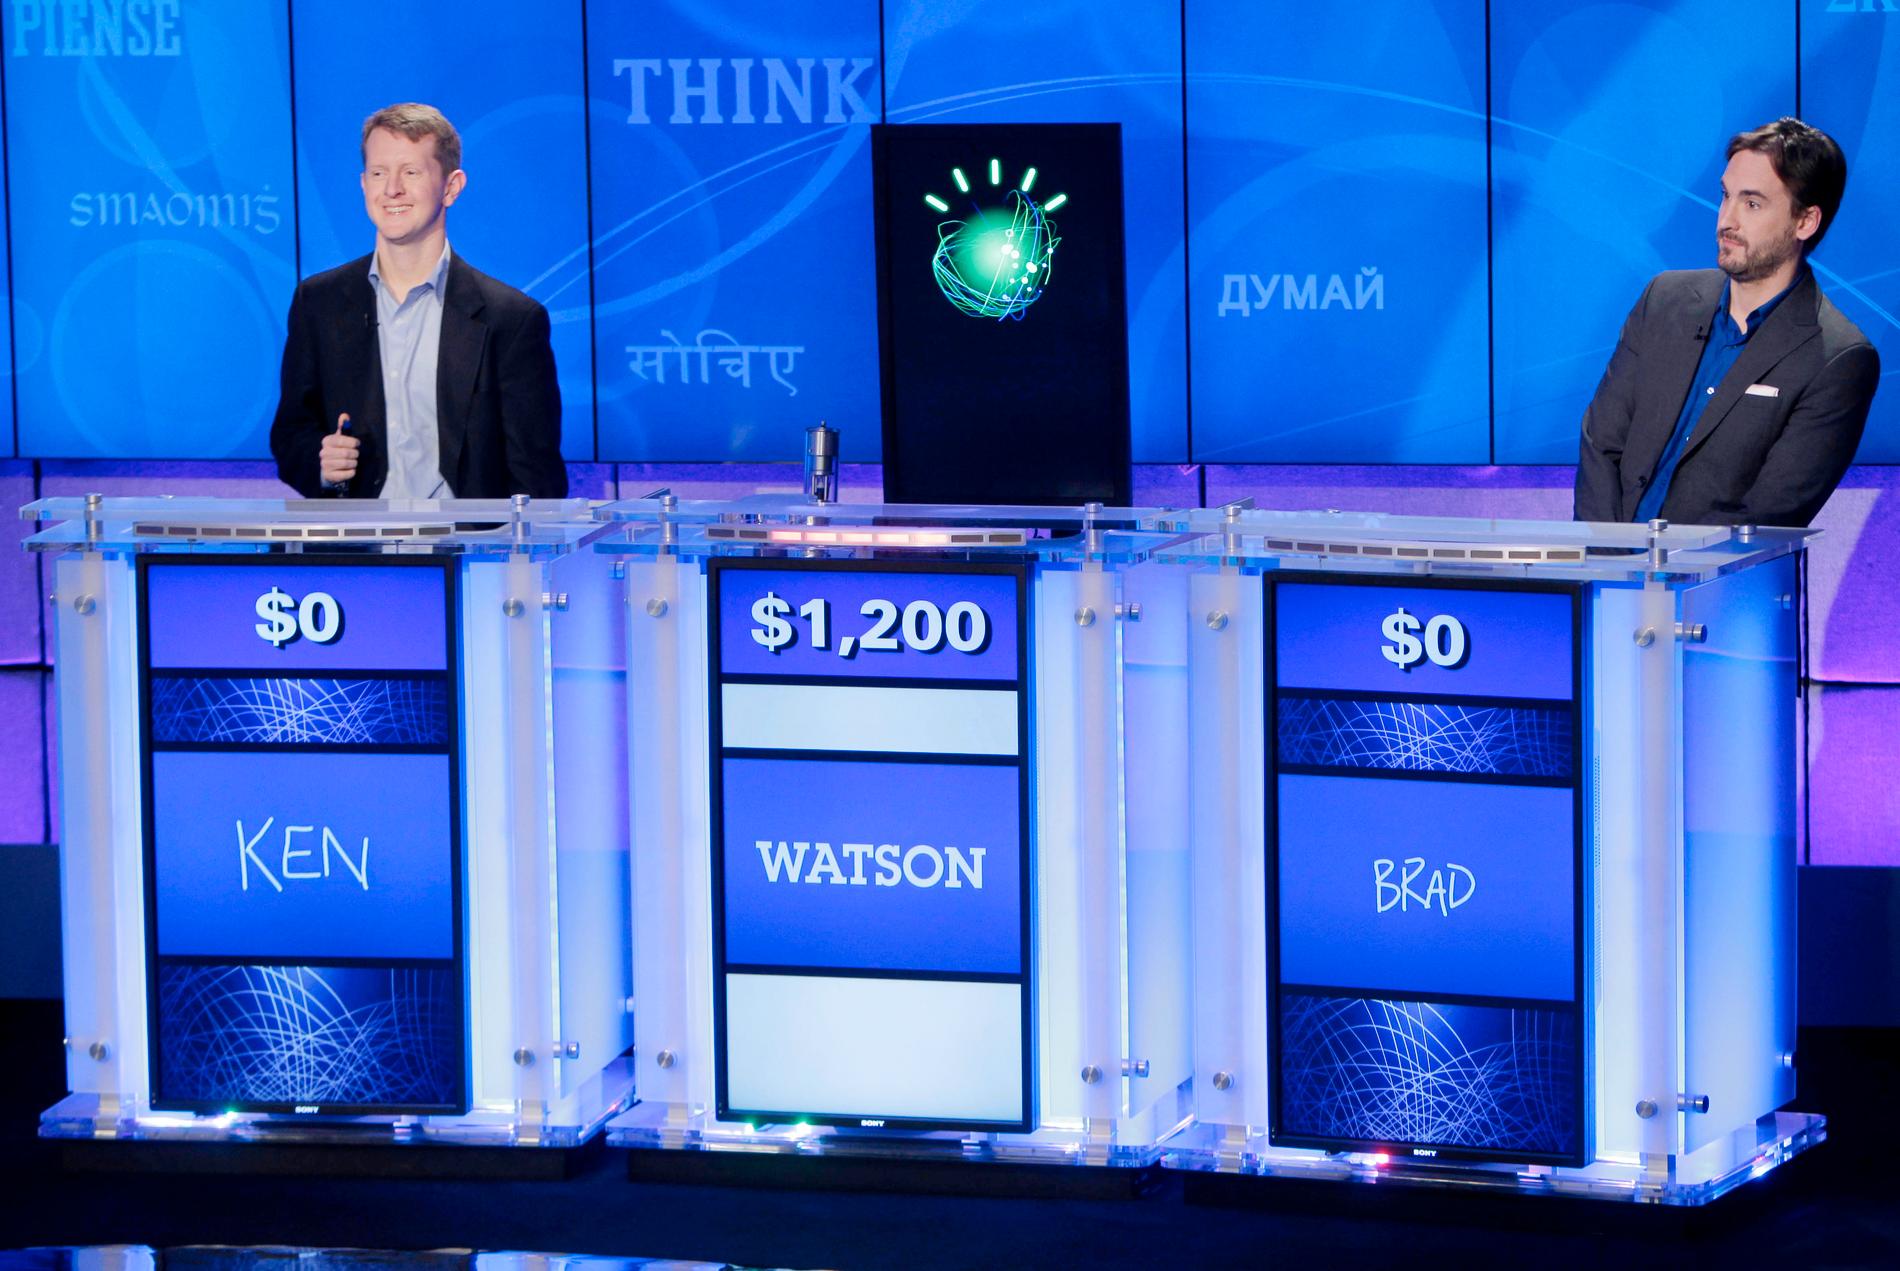 2011 tävlade, och vann, "roboten" Watson i amerikanska "Jeopardy". Nu har Watson, som utvecklats till en mer generell artificiell intelligens (AI), lärt sig svenska. Arkivbild.